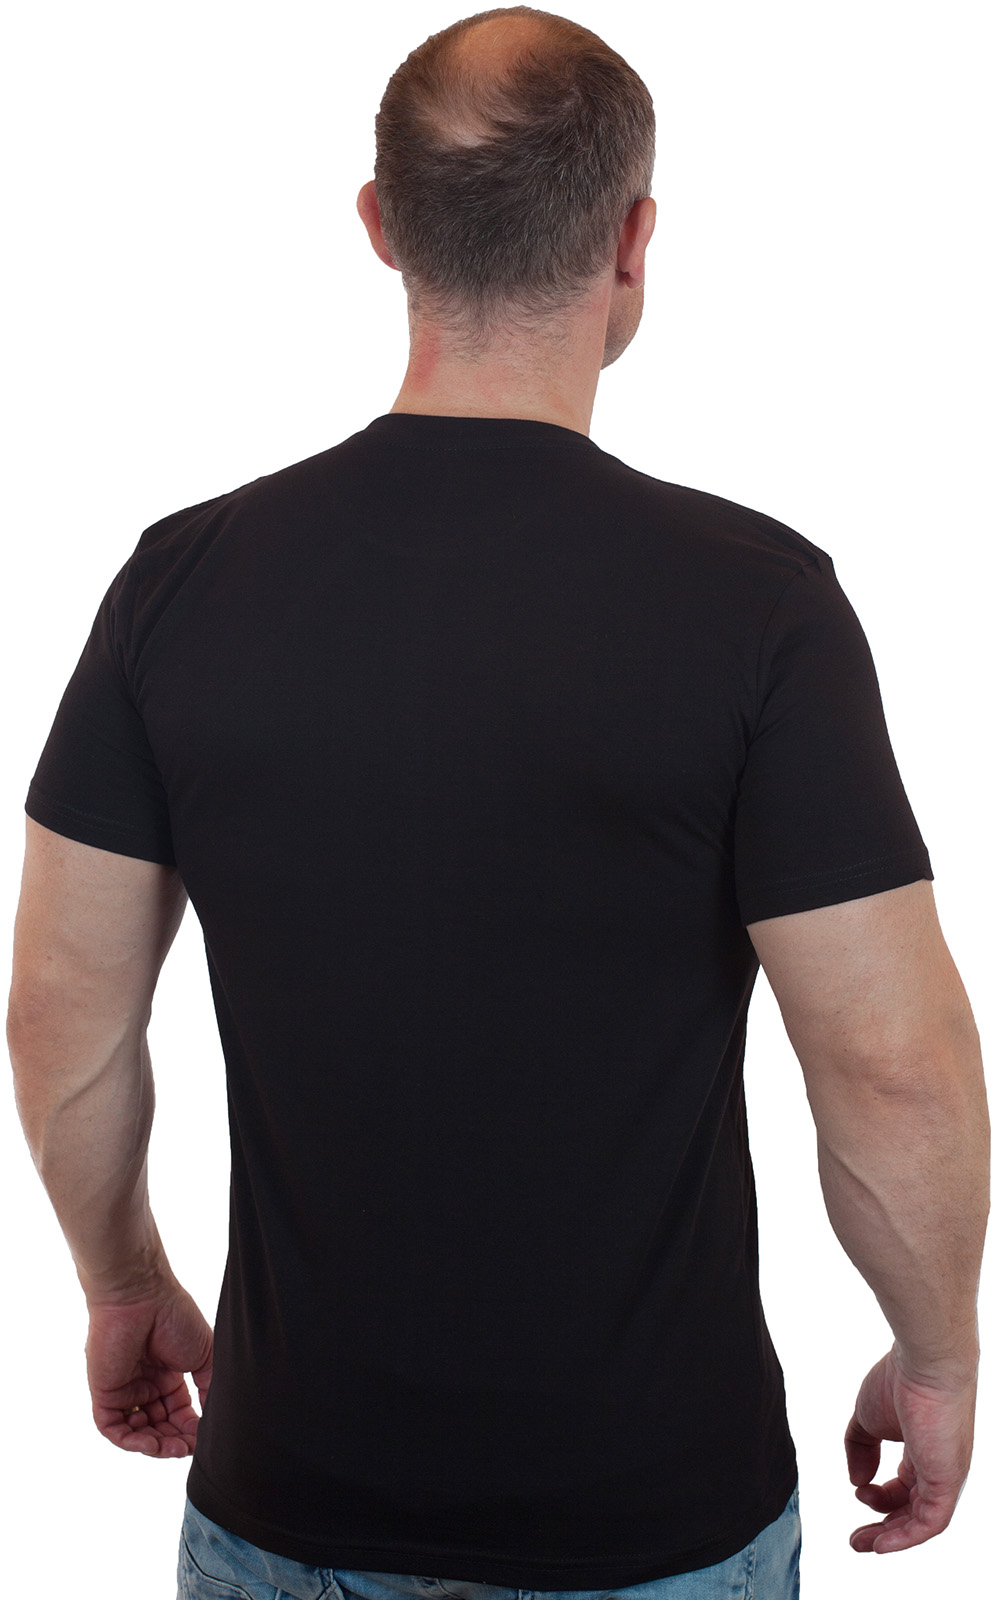 Недорогие футболки для современных мужчин – все размеры, цвета, фасоны